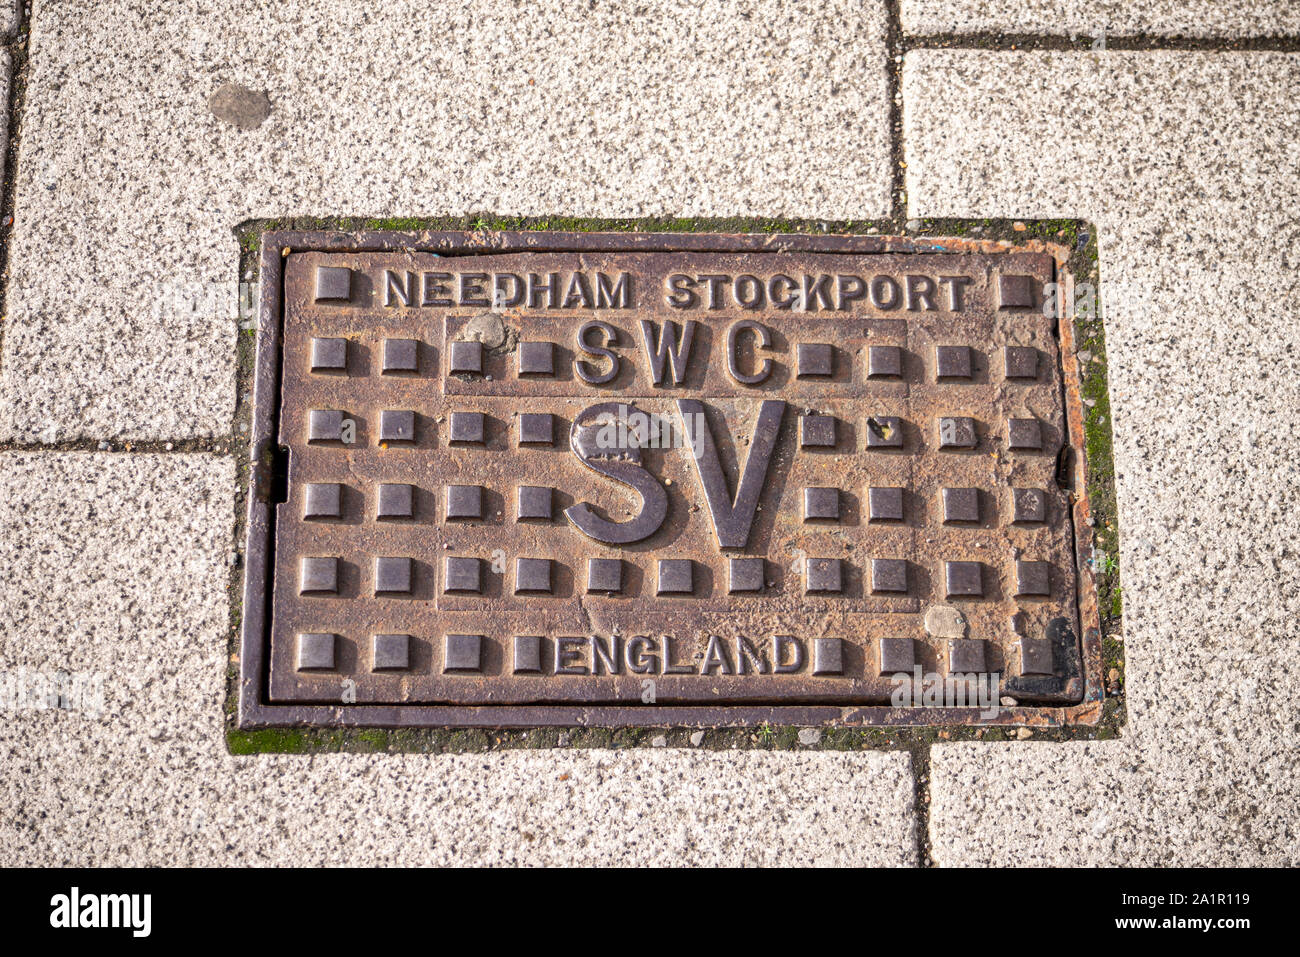 Le couvercle d'accès au trou d'homme à Southend on Sea, Essex, Royaume-Uni. Needham Stockport Angleterre VS CFC. Couvercle d'entretien. Needham Foundry Banque D'Images